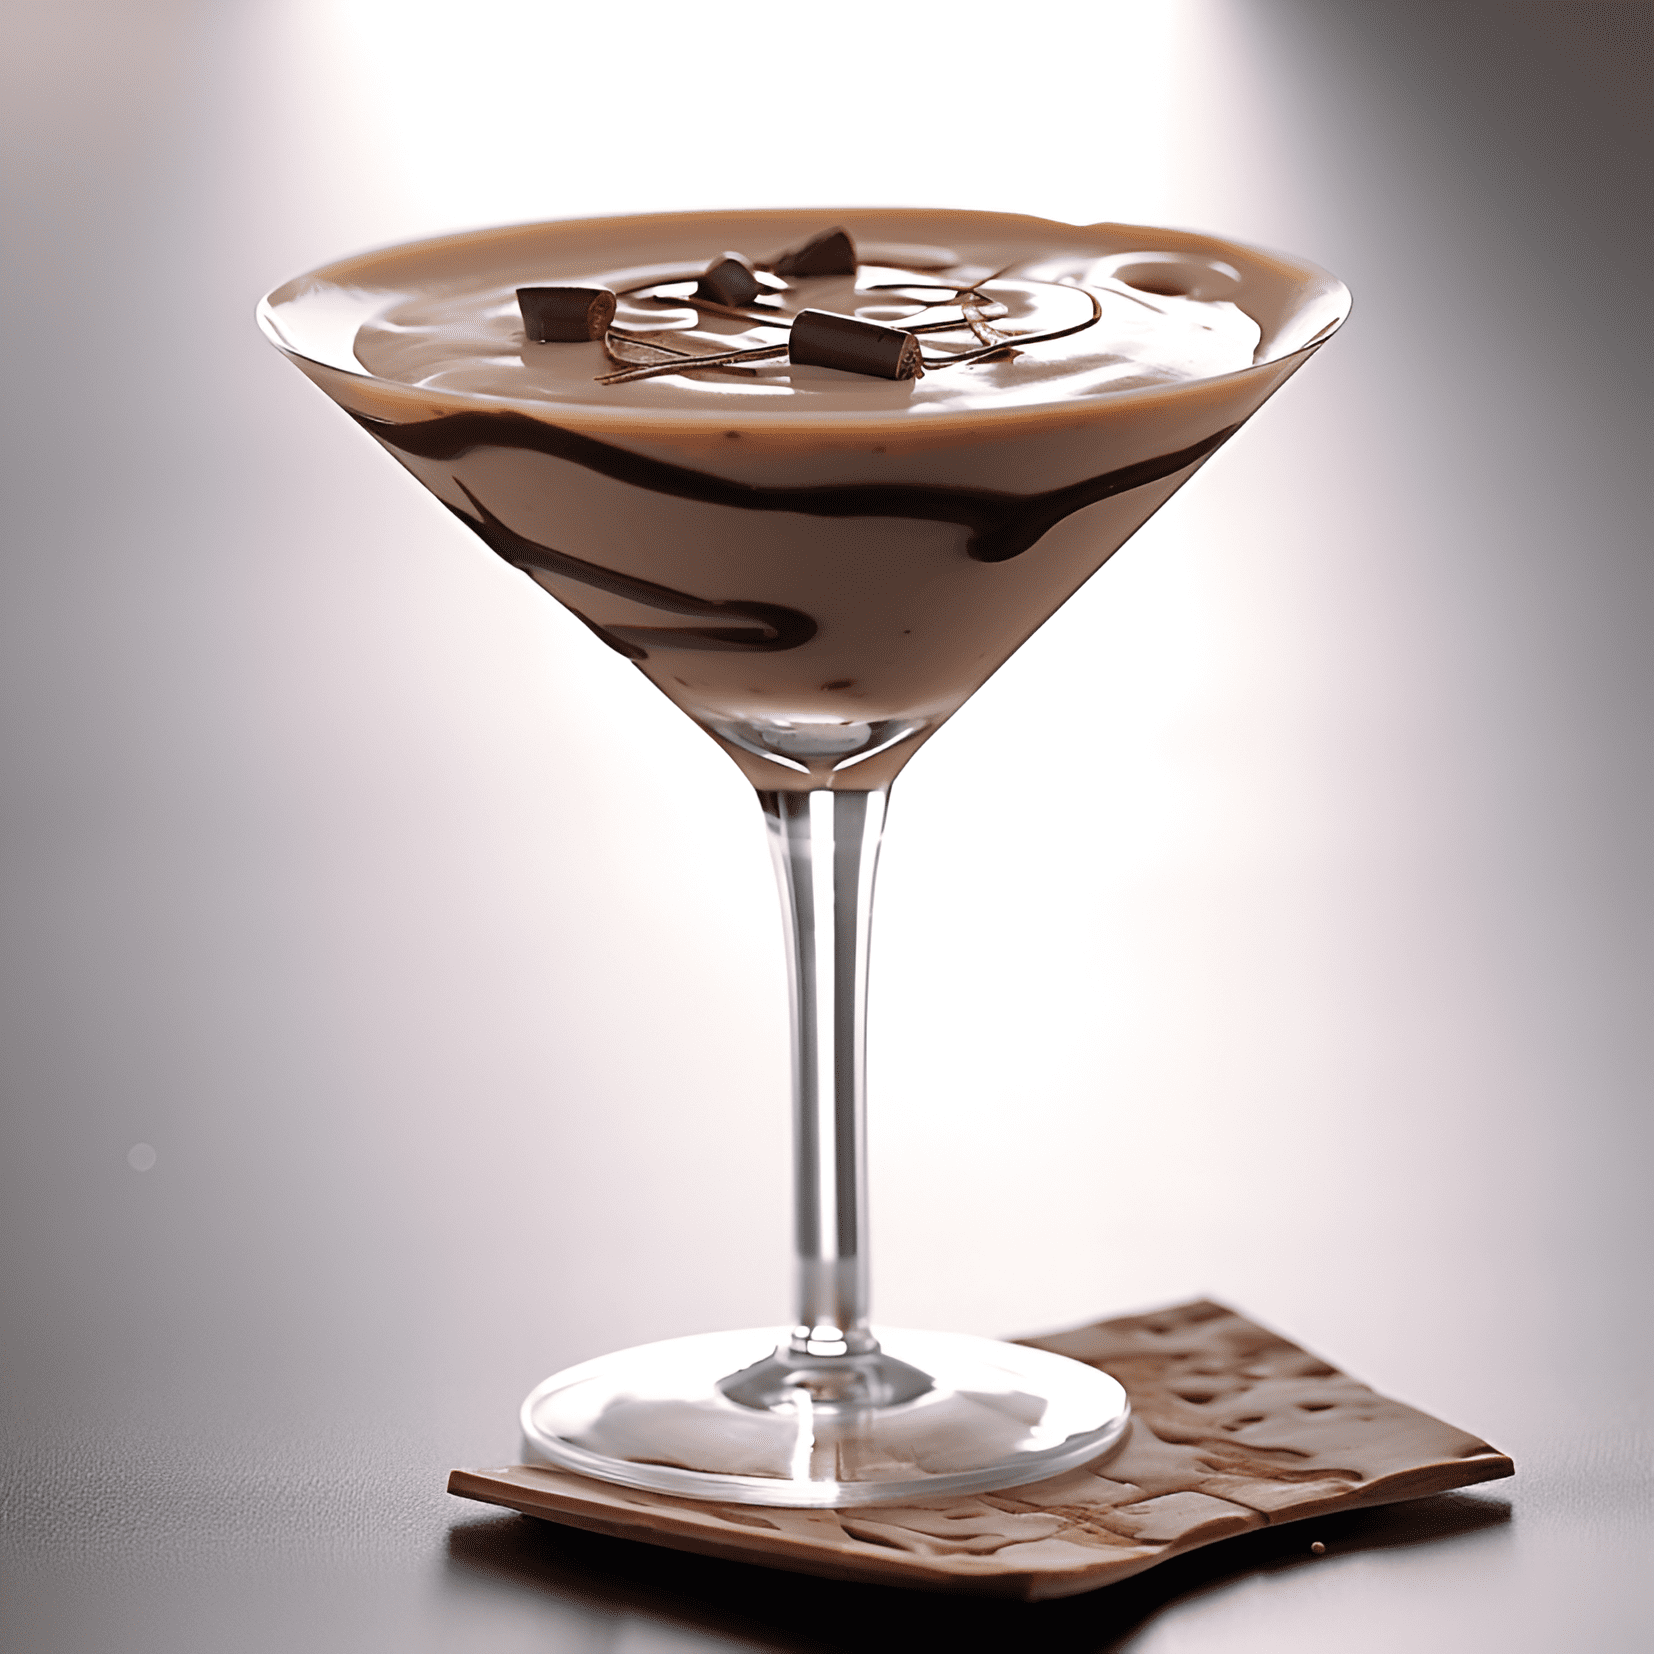 El Chocolate Martini es rico, cremoso y dulce, con un sabor a chocolate aterciopelado y un toque de vainilla. Tiene una sensación suave y lujosa en la boca y un toque ligeramente embriagador del vodka.